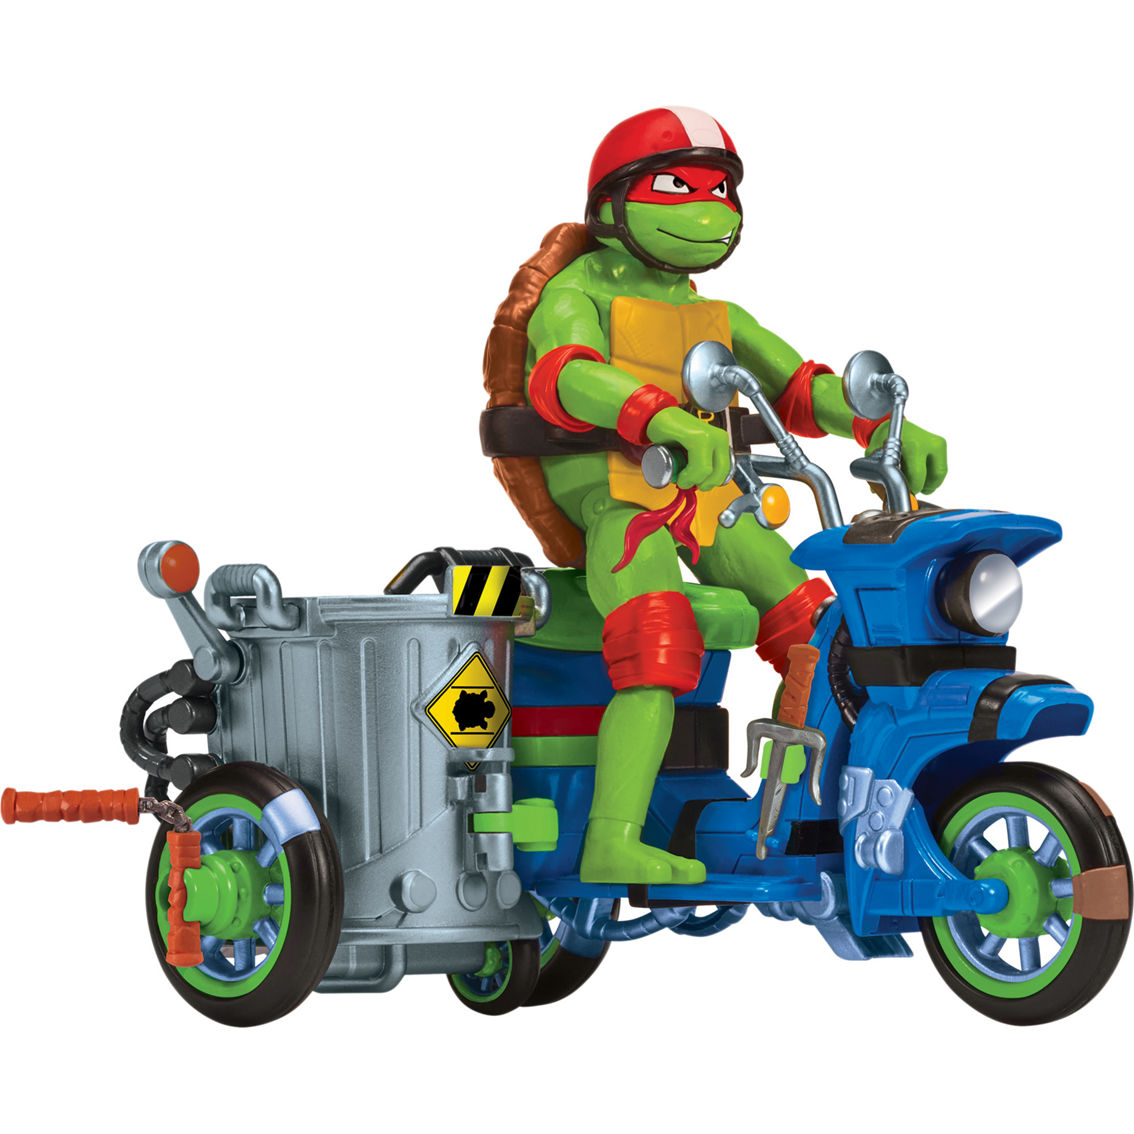 Teenage Mutant Ninja Turtles Movie Battle Cycle with Raphael Figure - Image 2 of 2